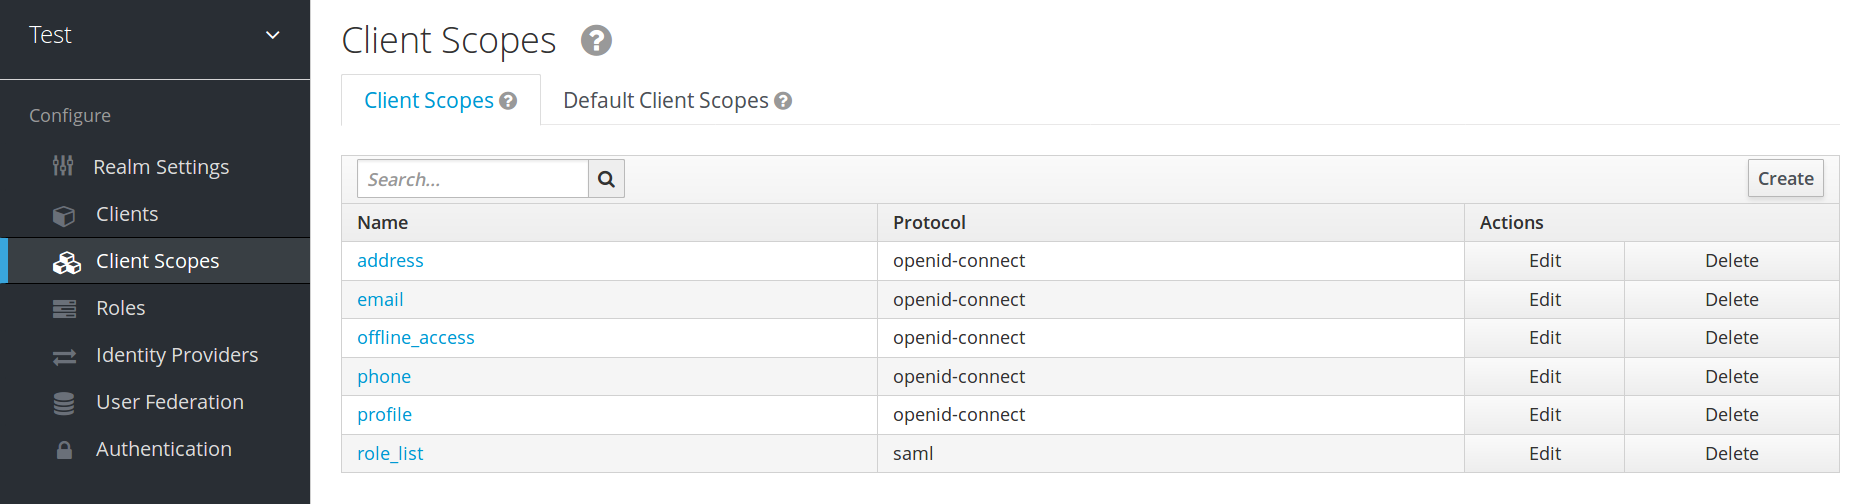 client scopes list